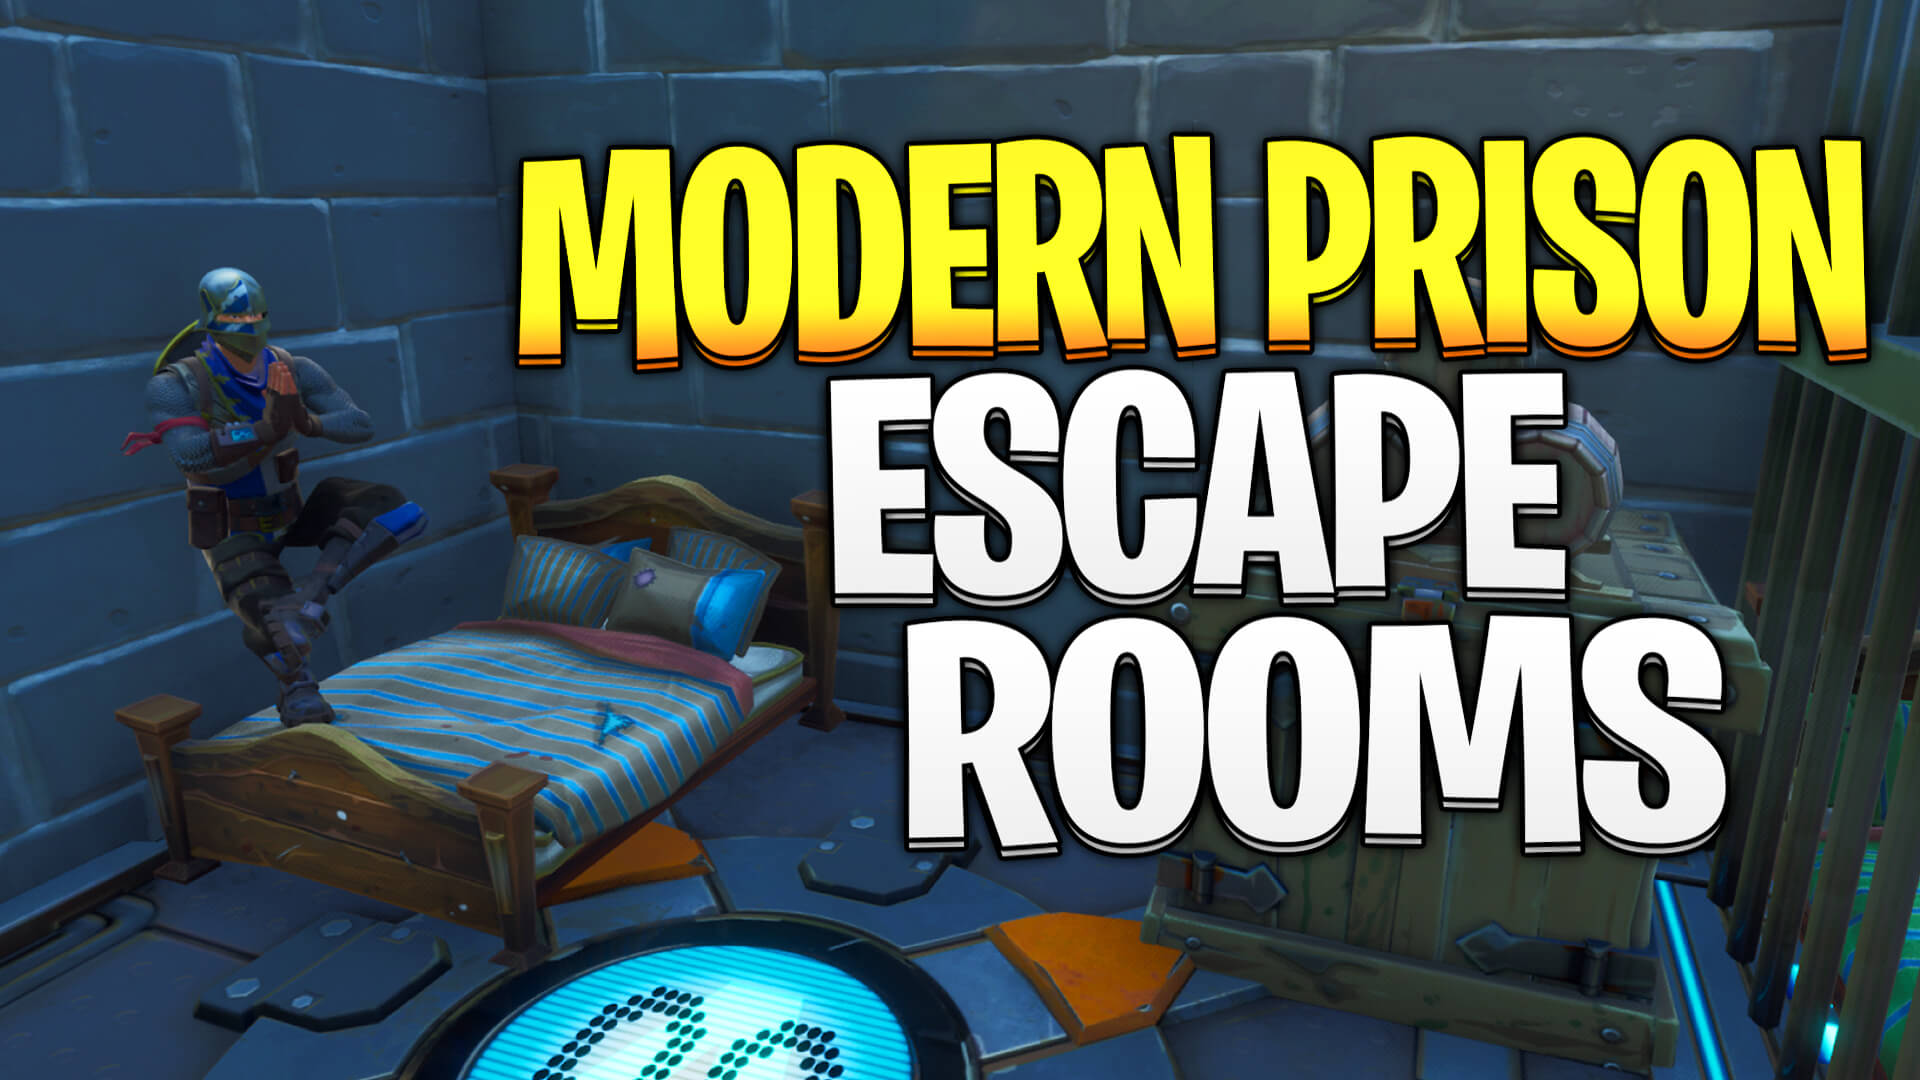 MODERN PRISON ESCAPE ROOMS